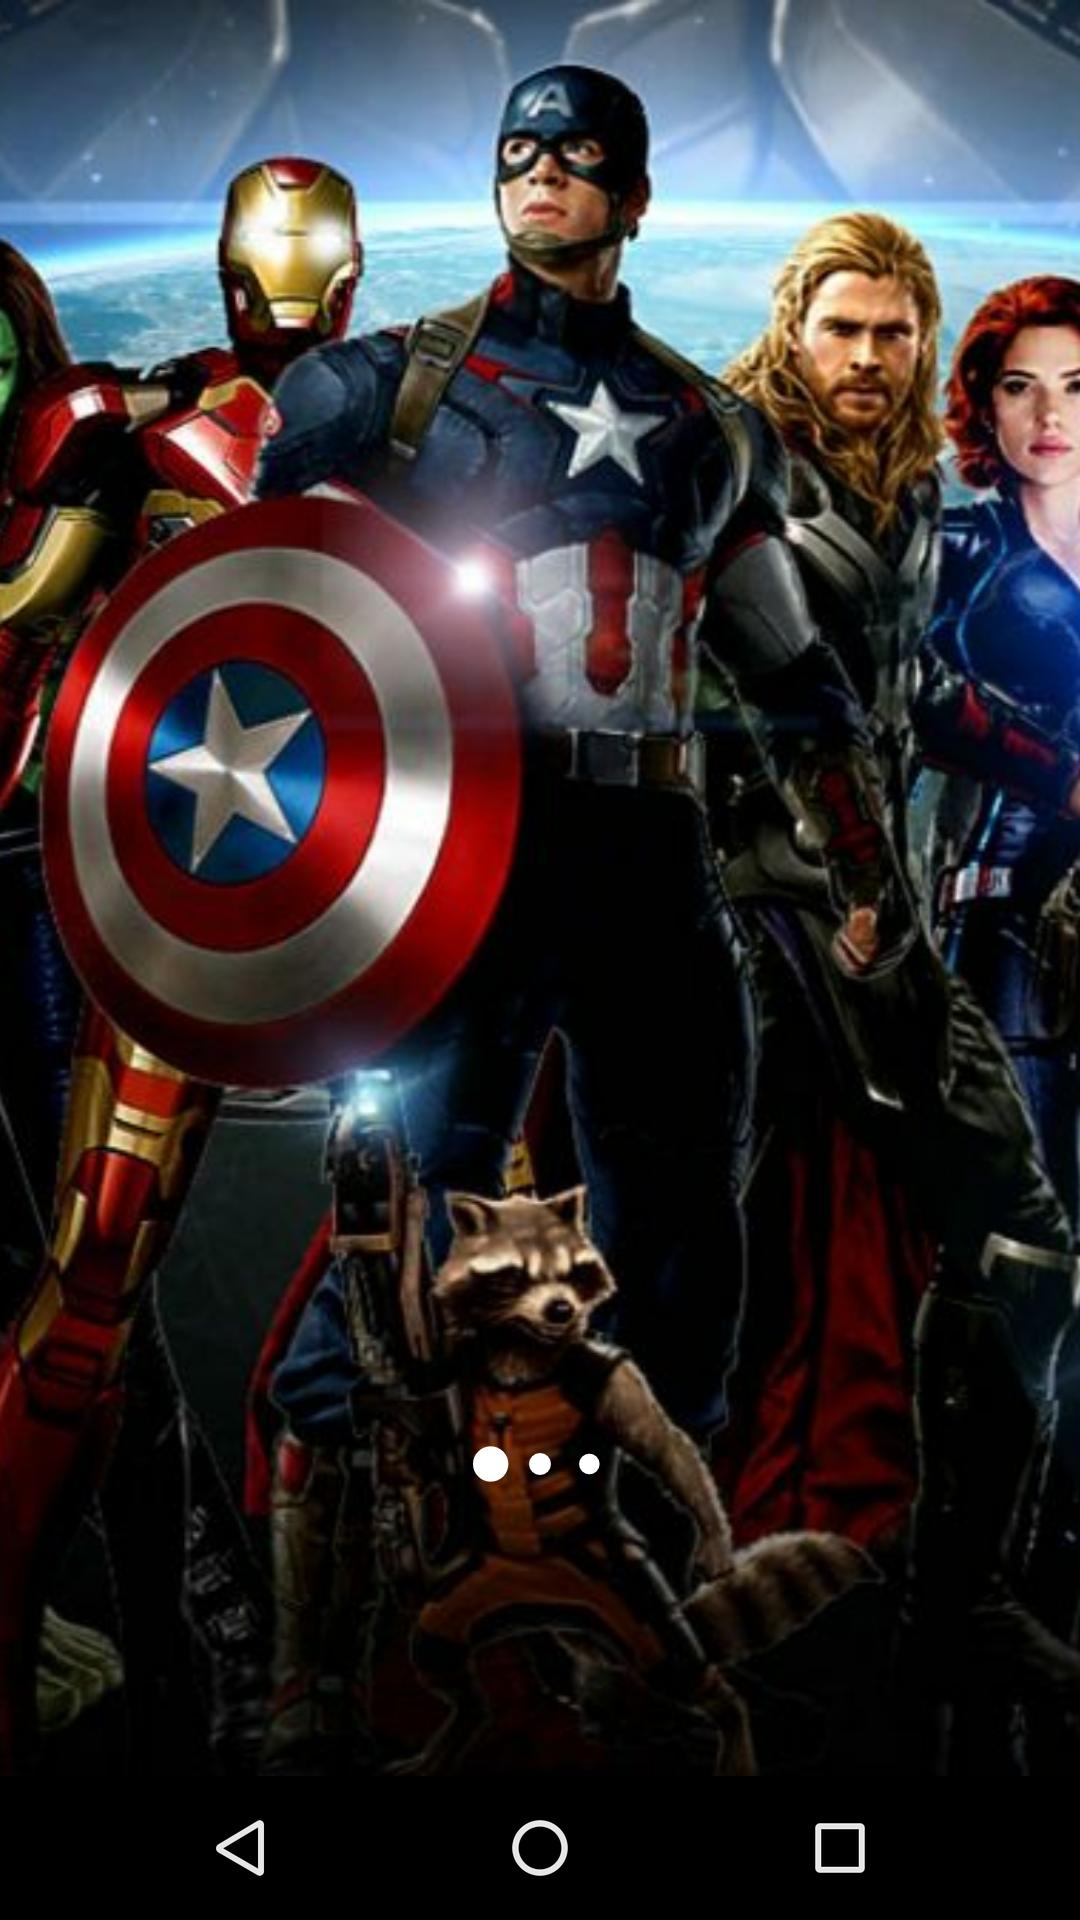 fond d'écran avengers pour android,capitaine amérique,super héros,héros,personnage fictif,film